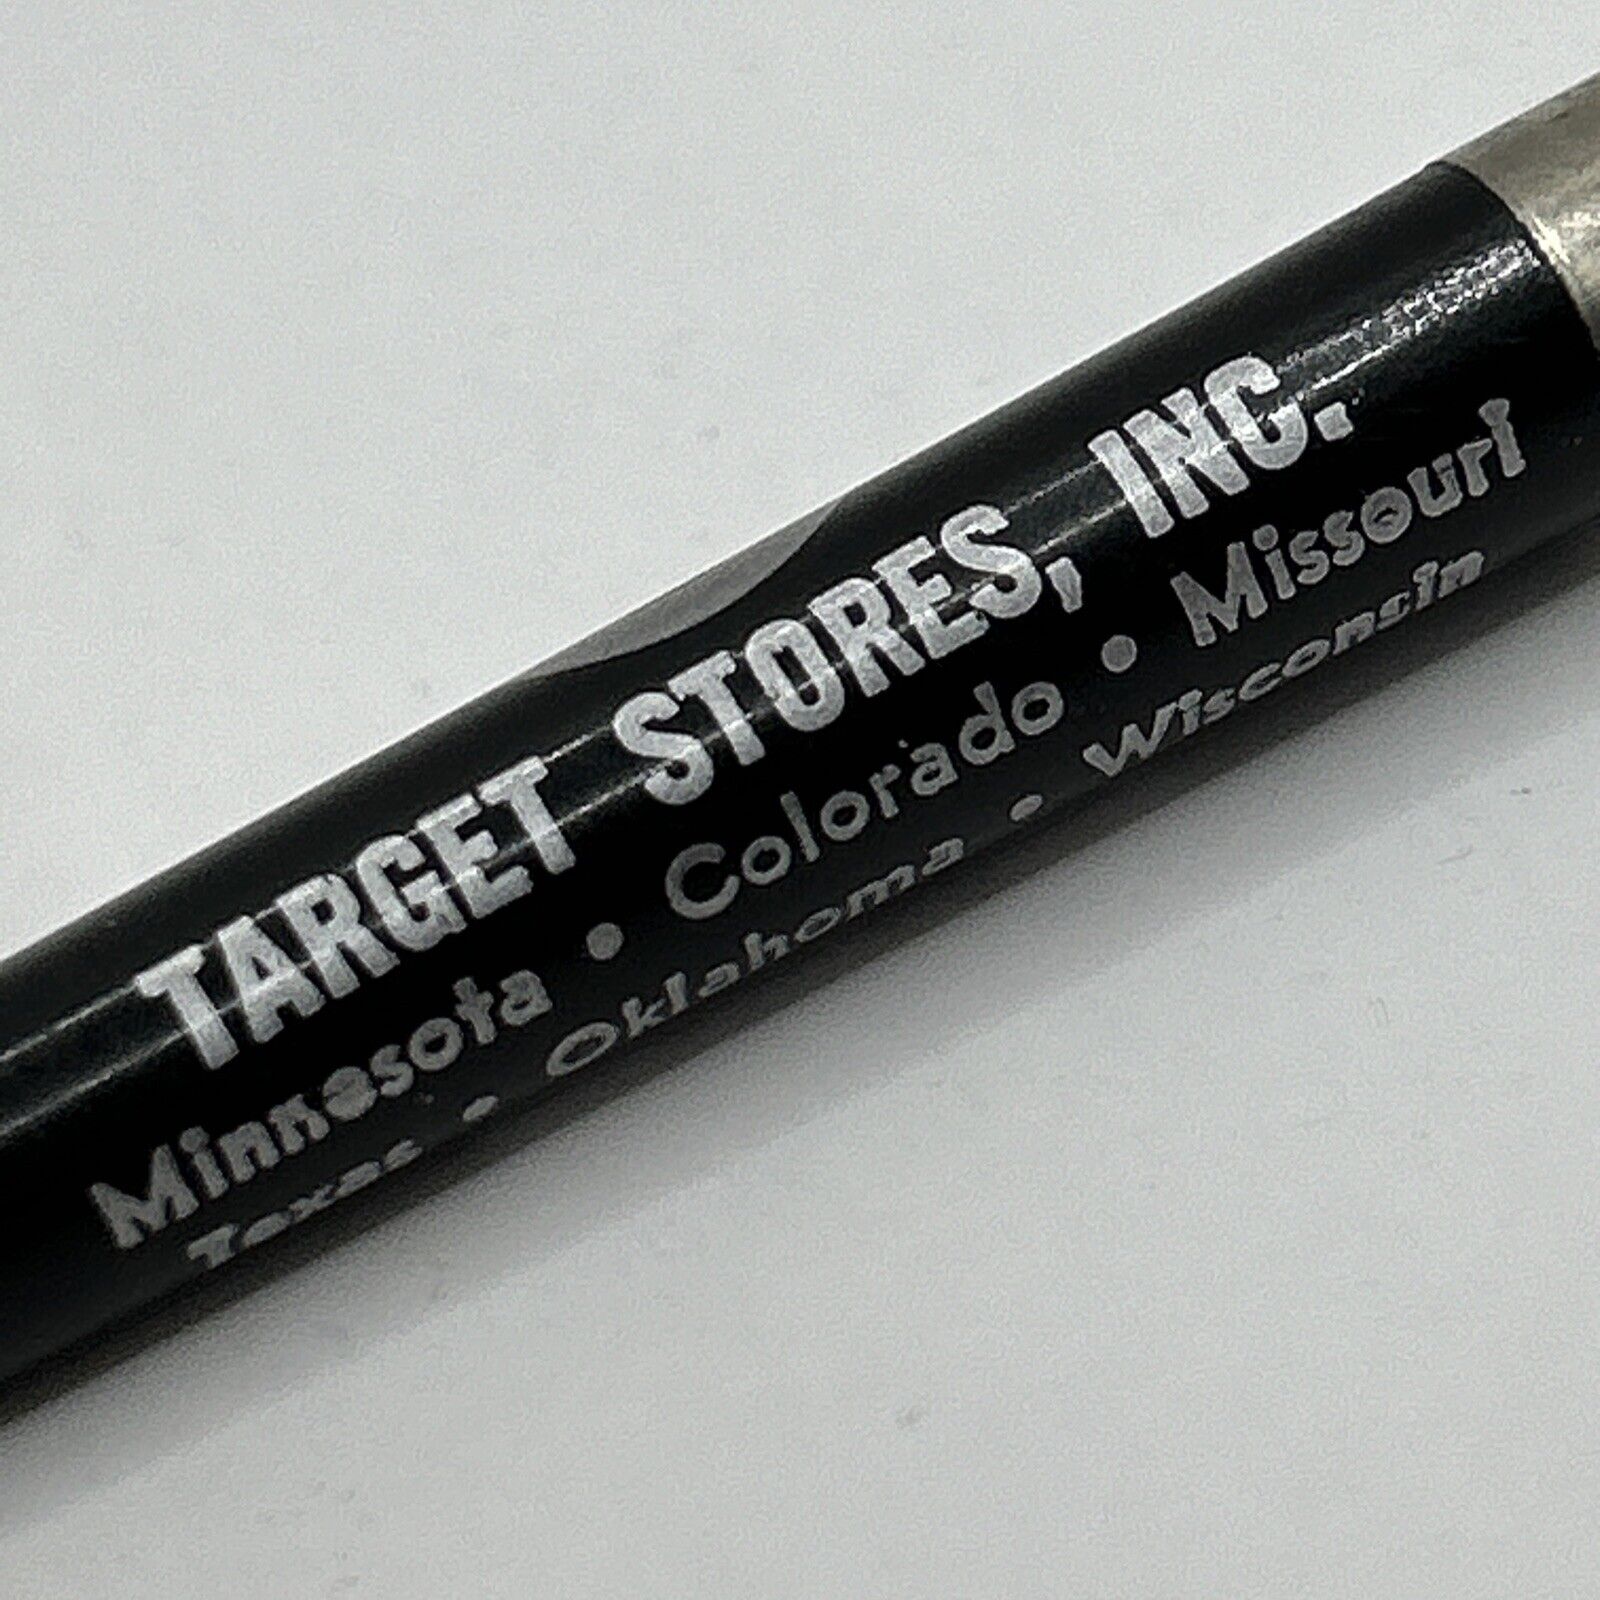 VTG 1970s/80s Ballpoint Pen Target Stores